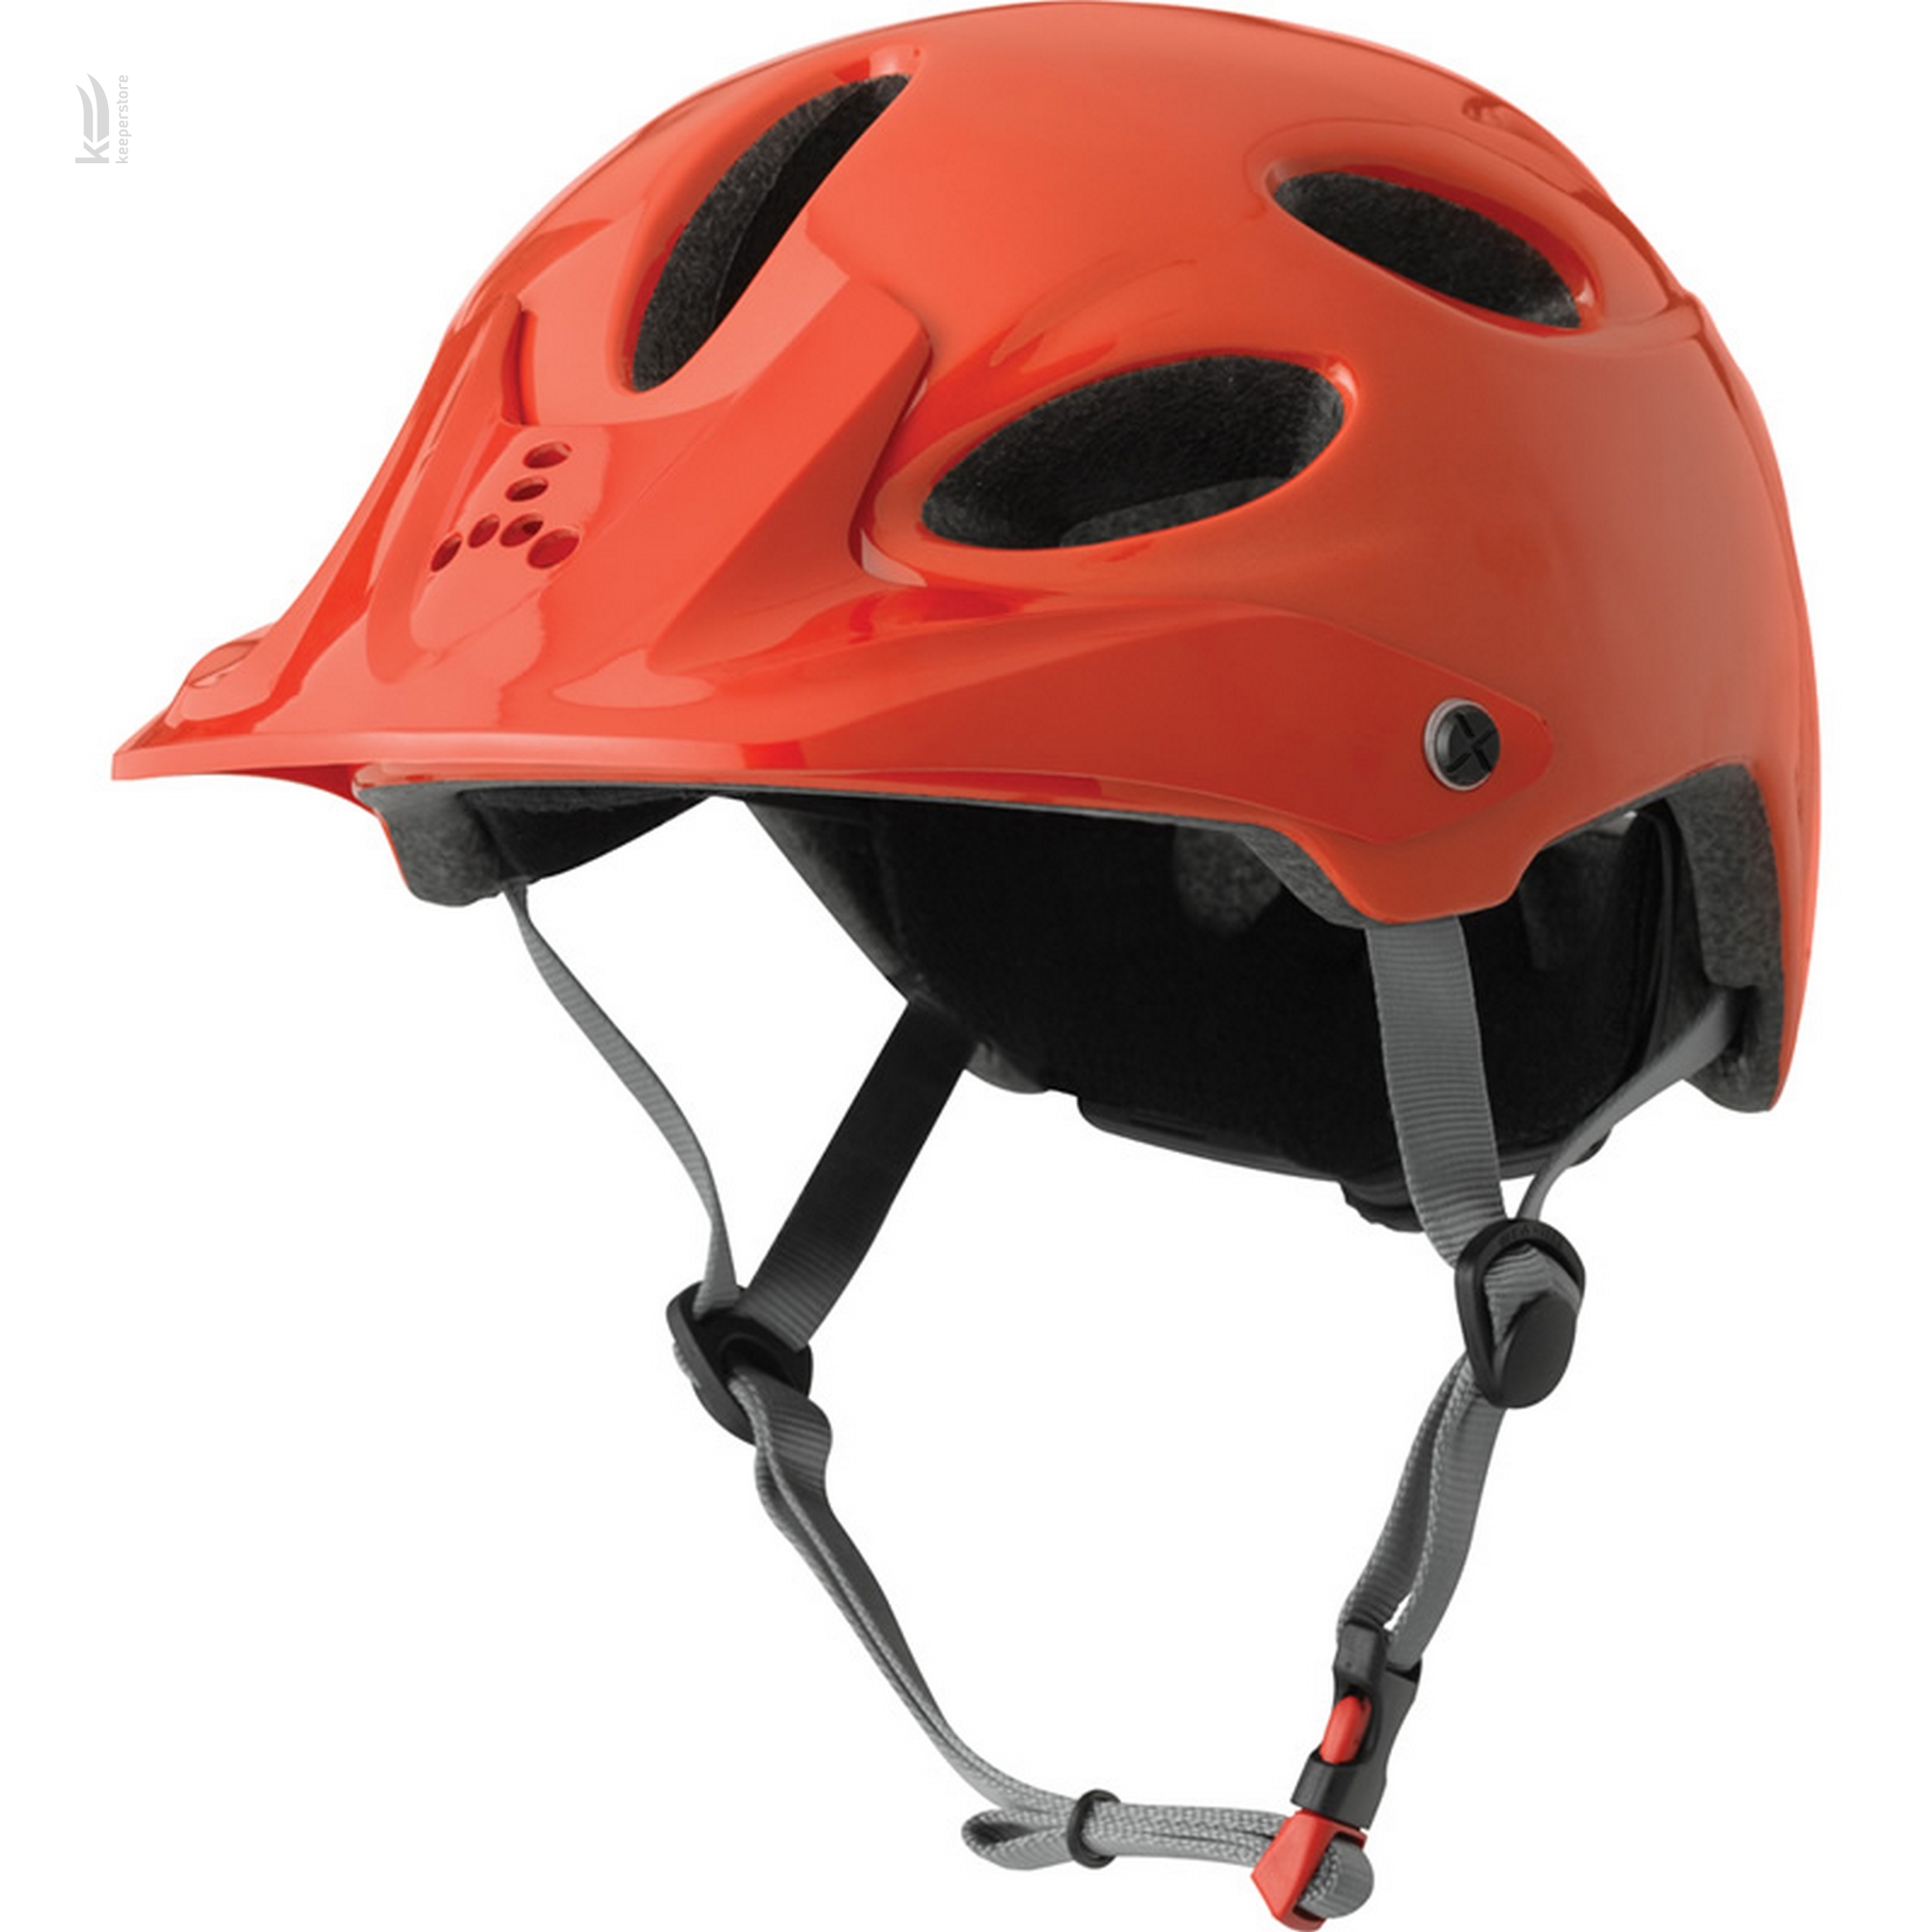 Купить шлем для горного велосипеда Triple8 Compass Orange Glossy в Киеве